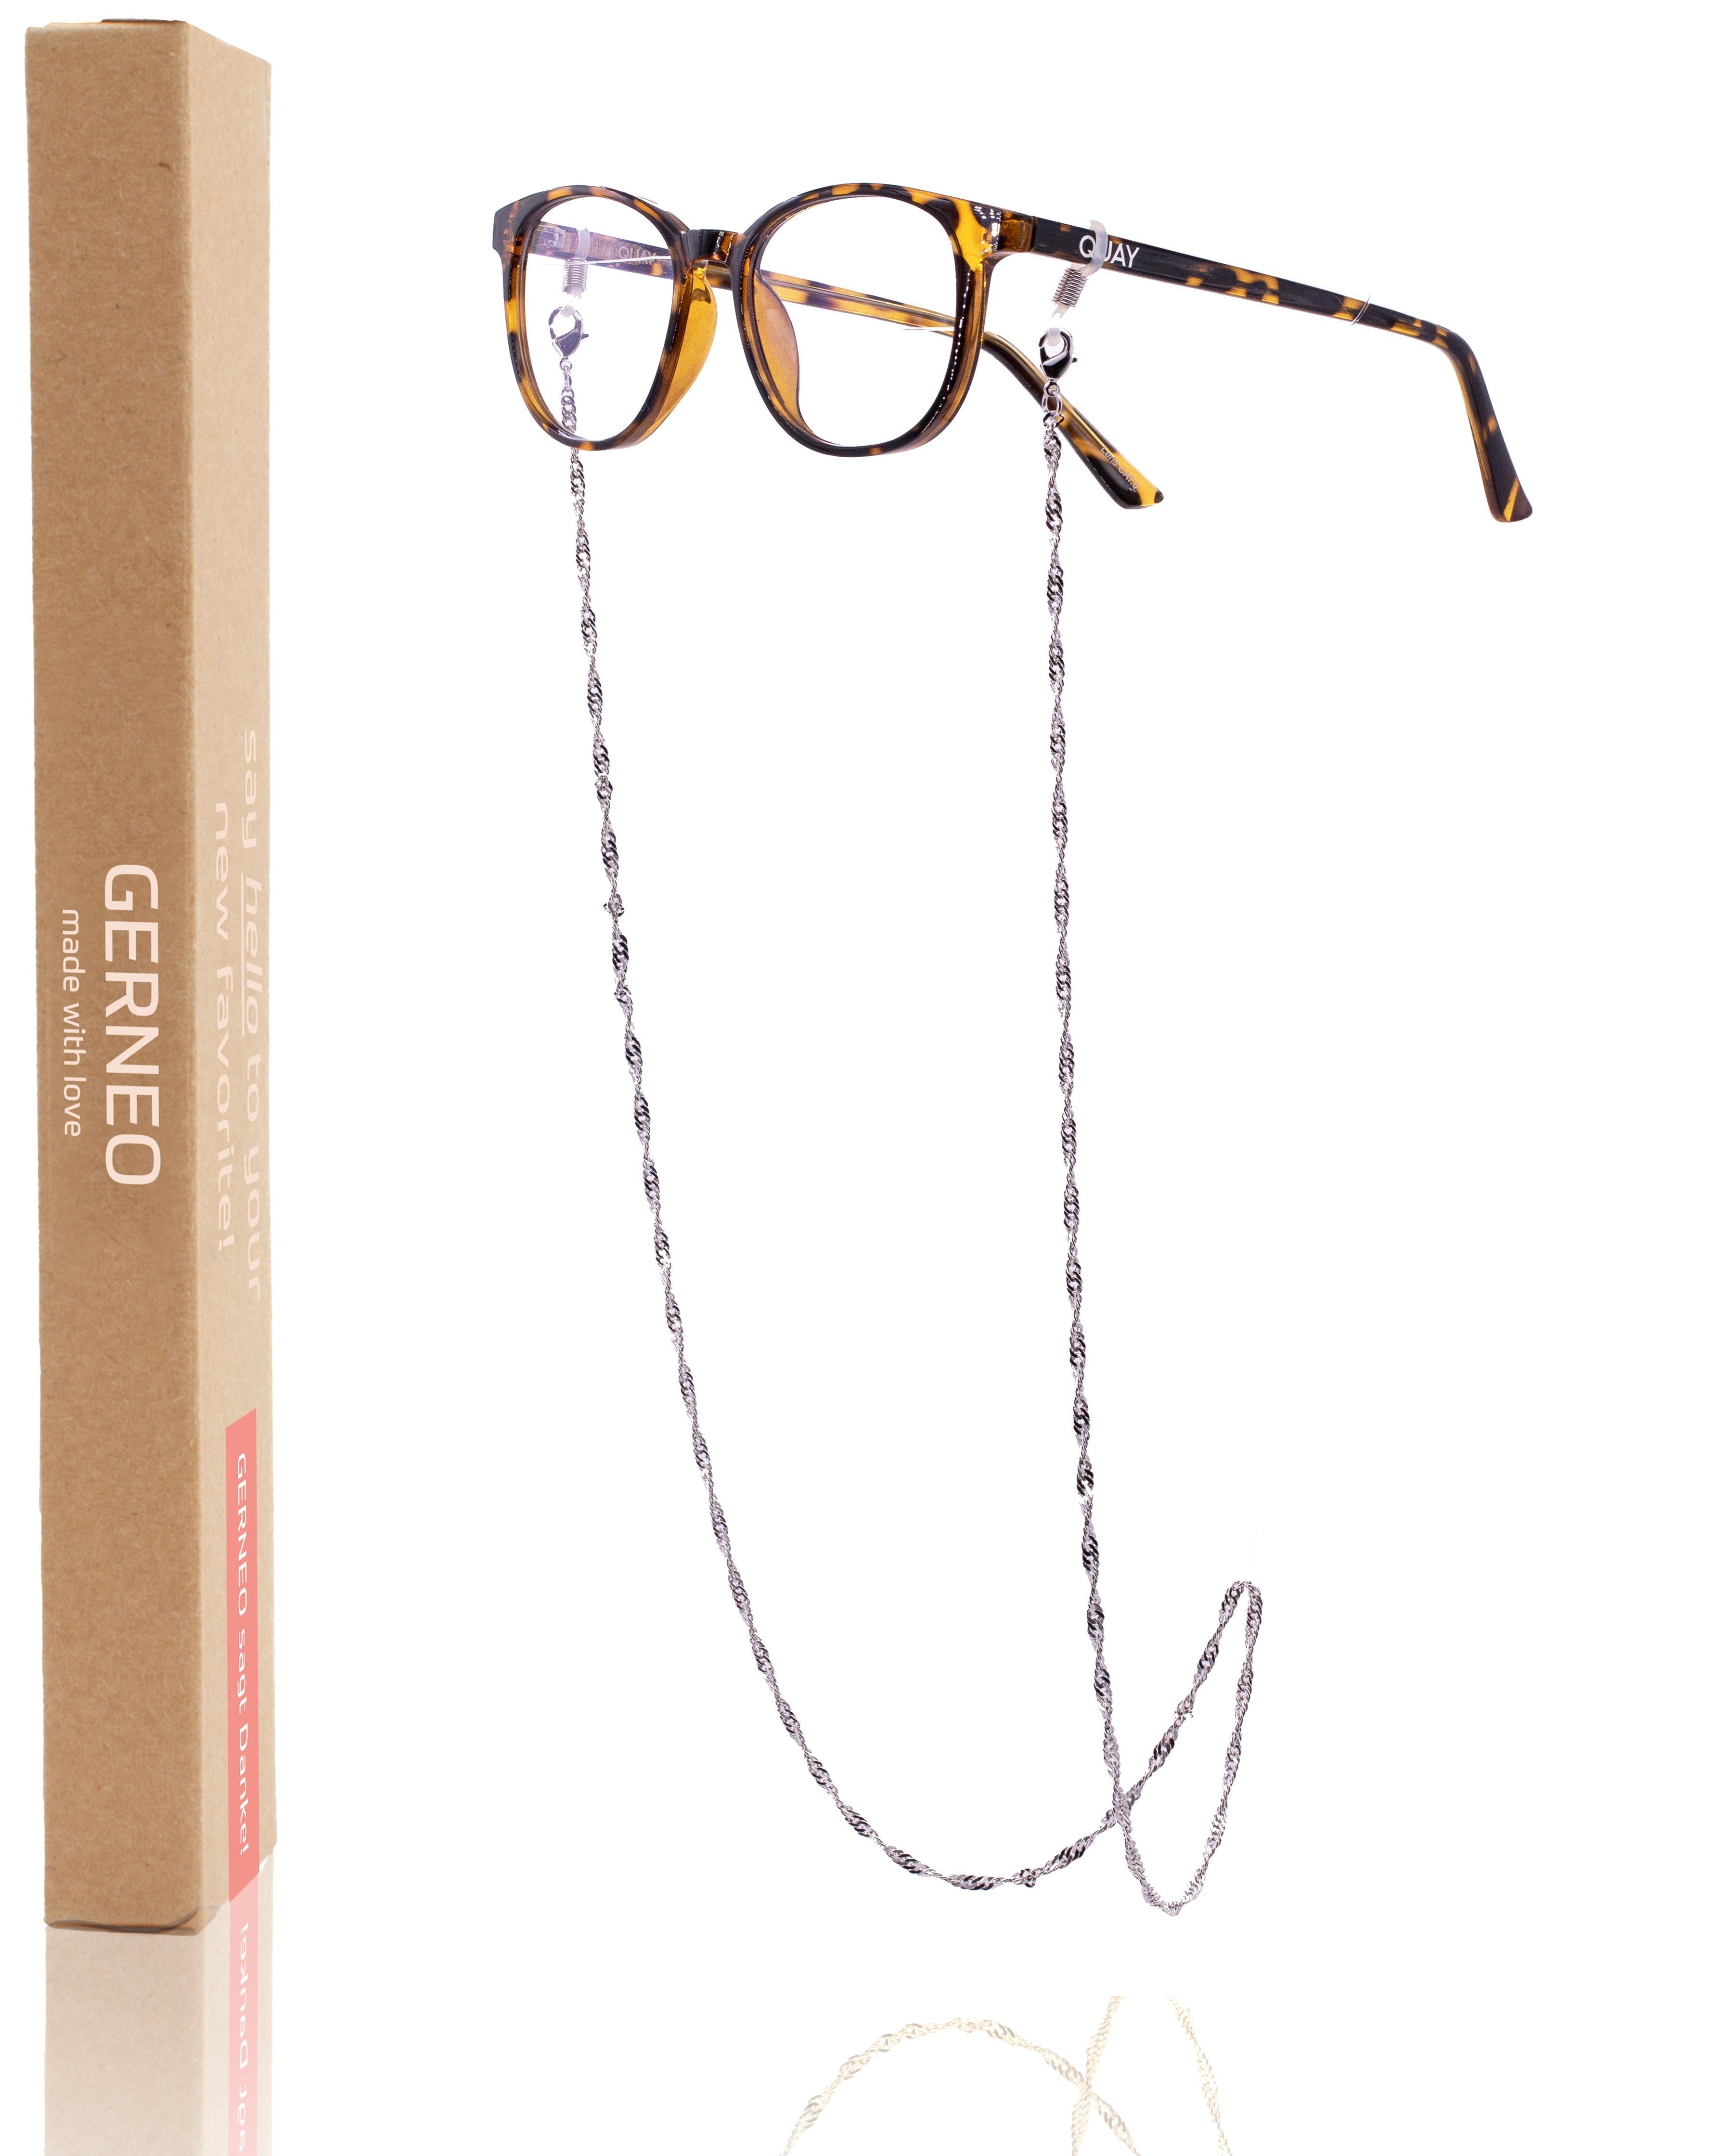 GERNEO Brillenkette GERNEO® - Toronto – Maskenhalter & Brillenkette Gold und Silber, korrosionsbeständig einzigartig hochwertige Brillen Kette Brillenband | Brillenketten